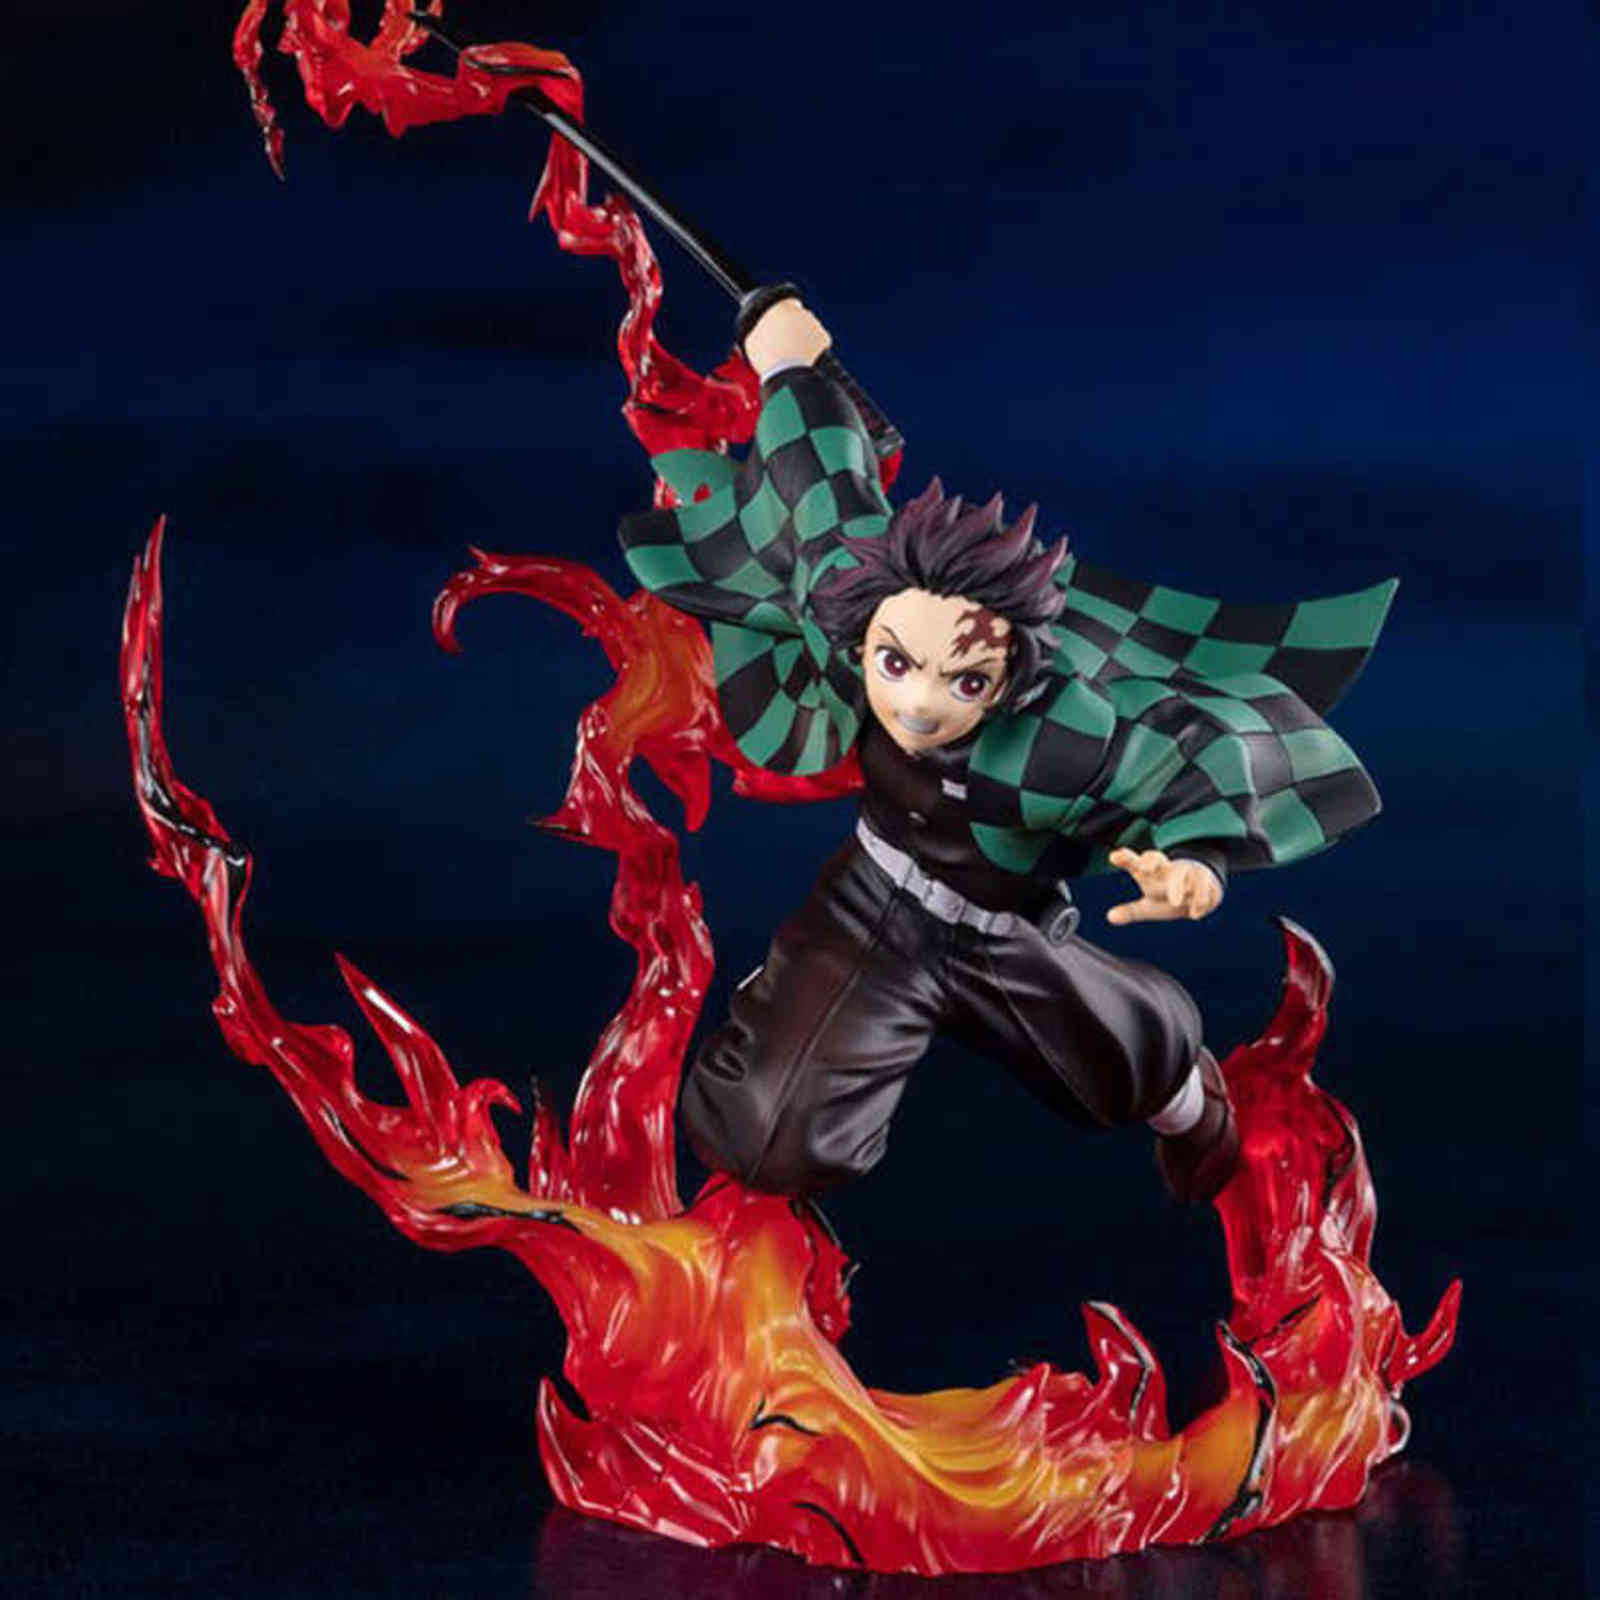 

23cm Anime Demon Slayer Figure Demon Slayer flame Kamado Tanjirou PVC Action Figure Collectible Model Toys Kid Gift H1108, No box